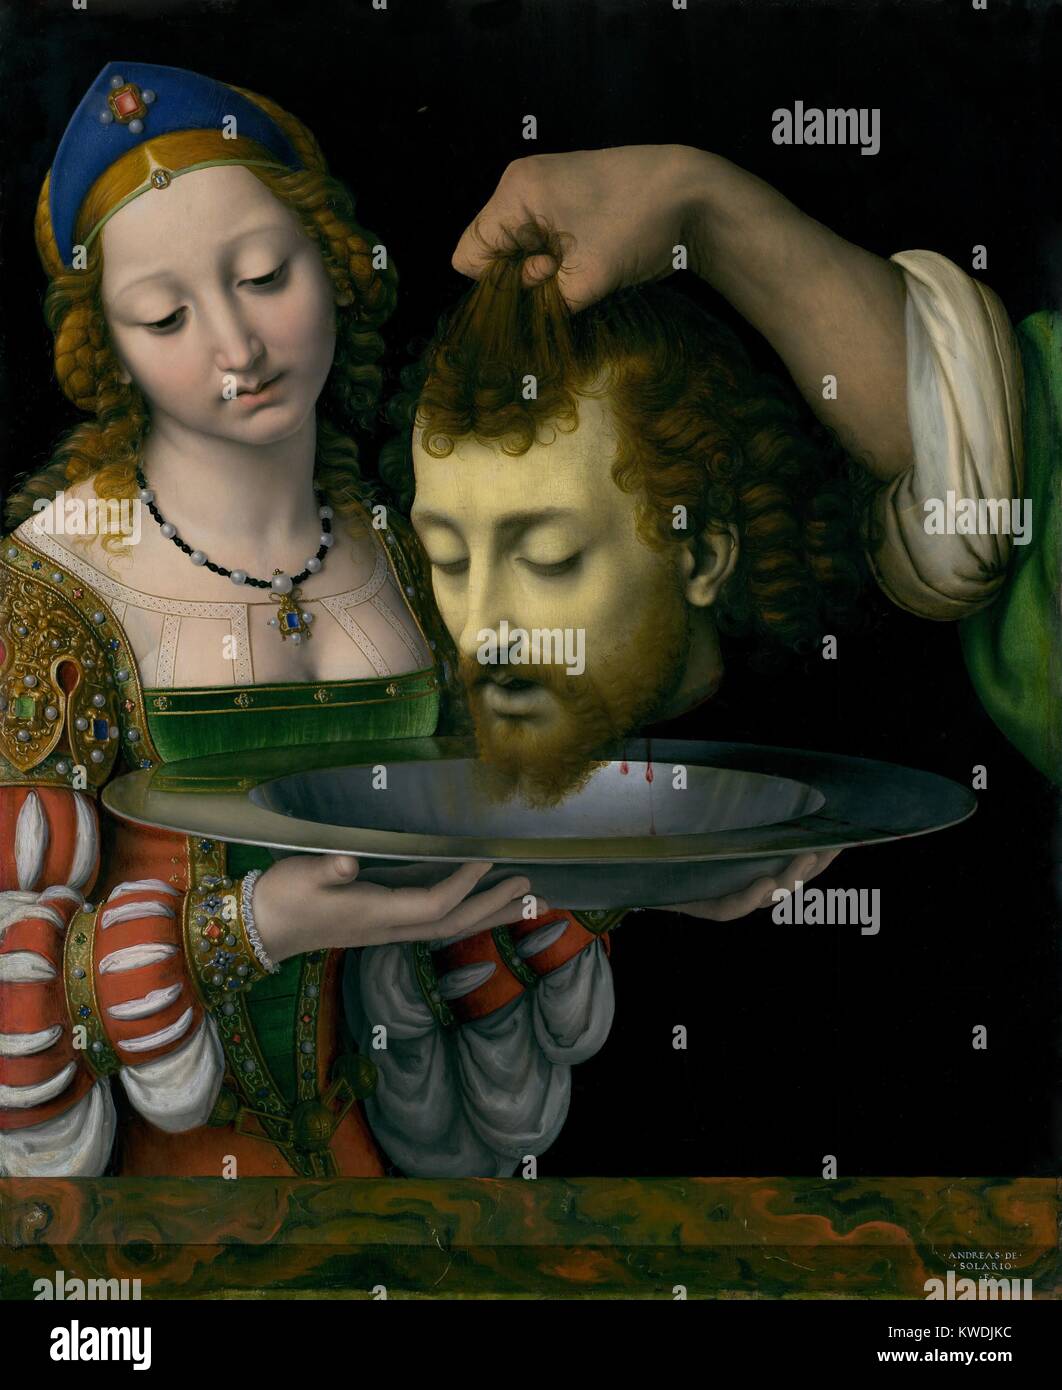 Salomé avec la tête de Jean le Baptiste, par Andrea Solario, 1490-1524, huile sur toile de la Renaissance italienne. Il y a contraste dramatique entre Salome's beauty et bijoux et les Baptistes horrible tête décapitée tenue par un bras musclé désincarnée (BSLOC   2017 16 68) Banque D'Images